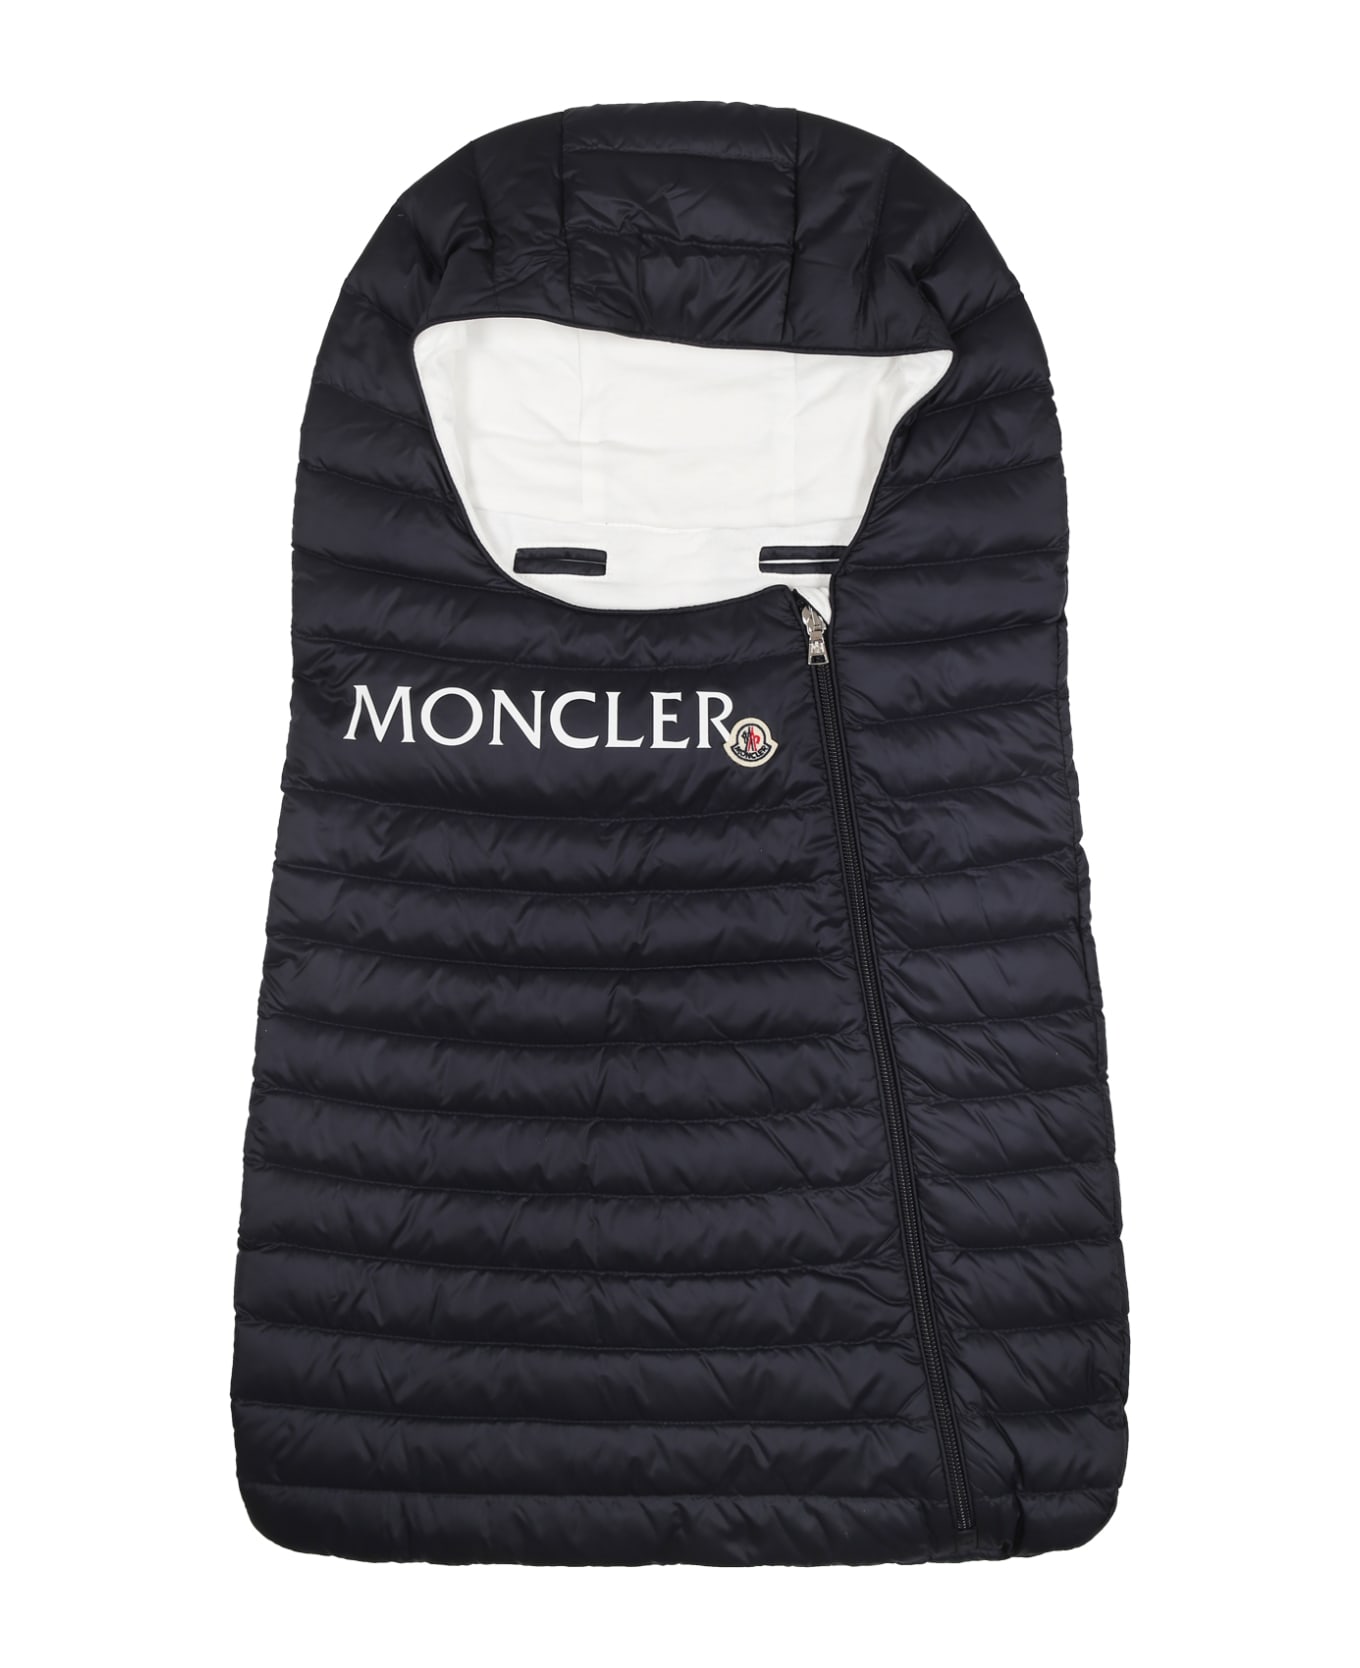 Moncler Blue Sleeping Melville Bag For Babies - Blue